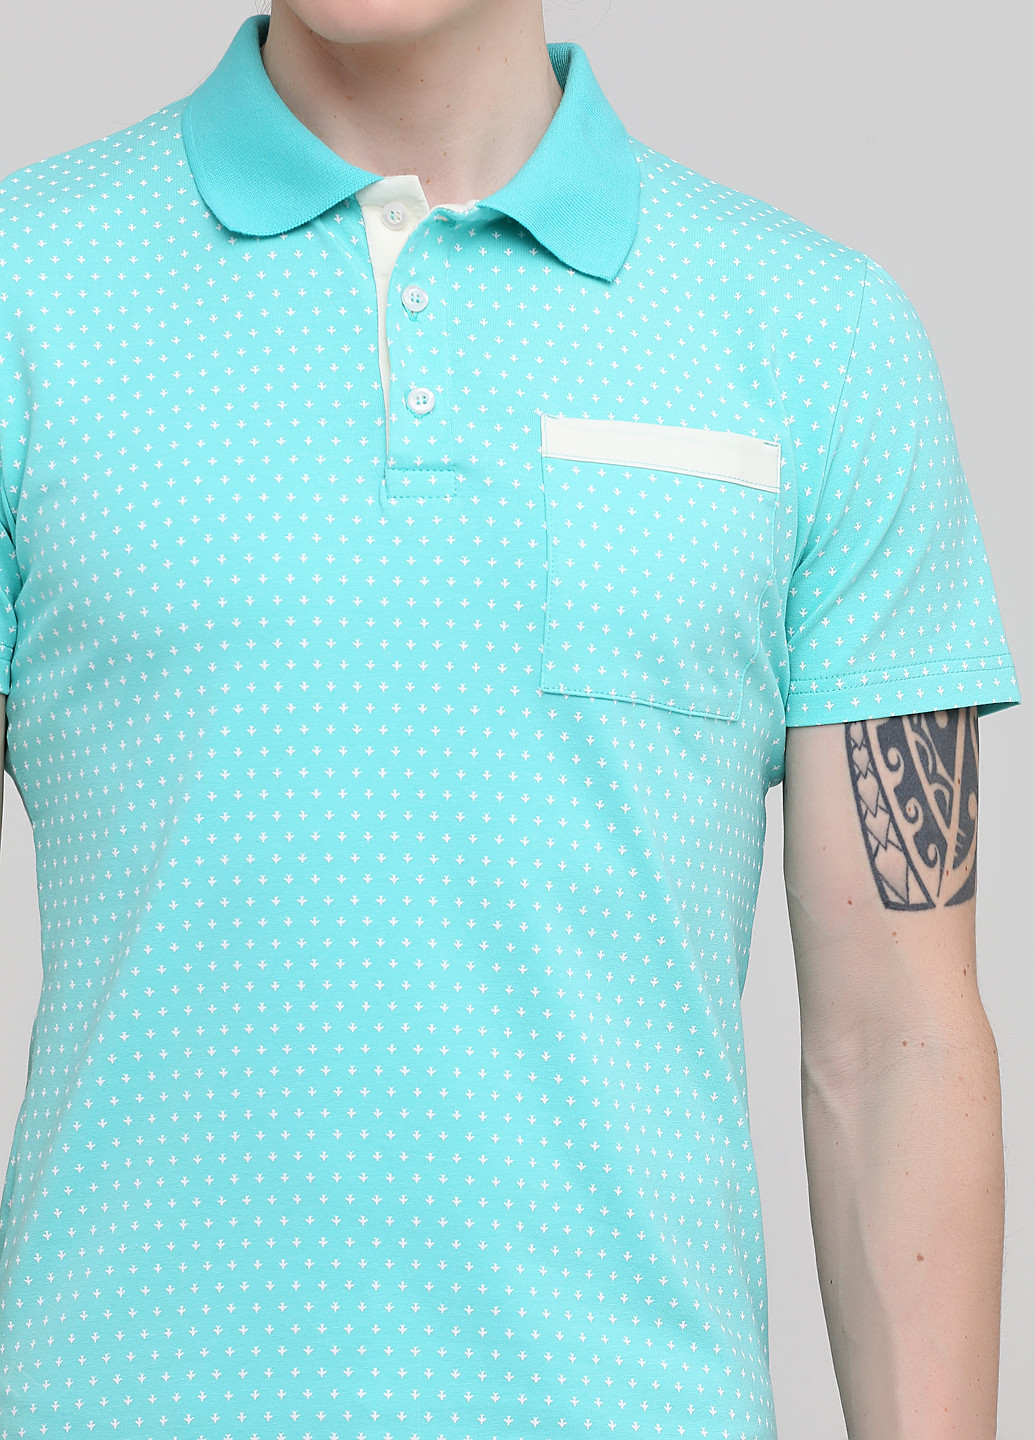 Светло-бирюзовая футболка-поло для мужчин Melgo с геометрическим узором